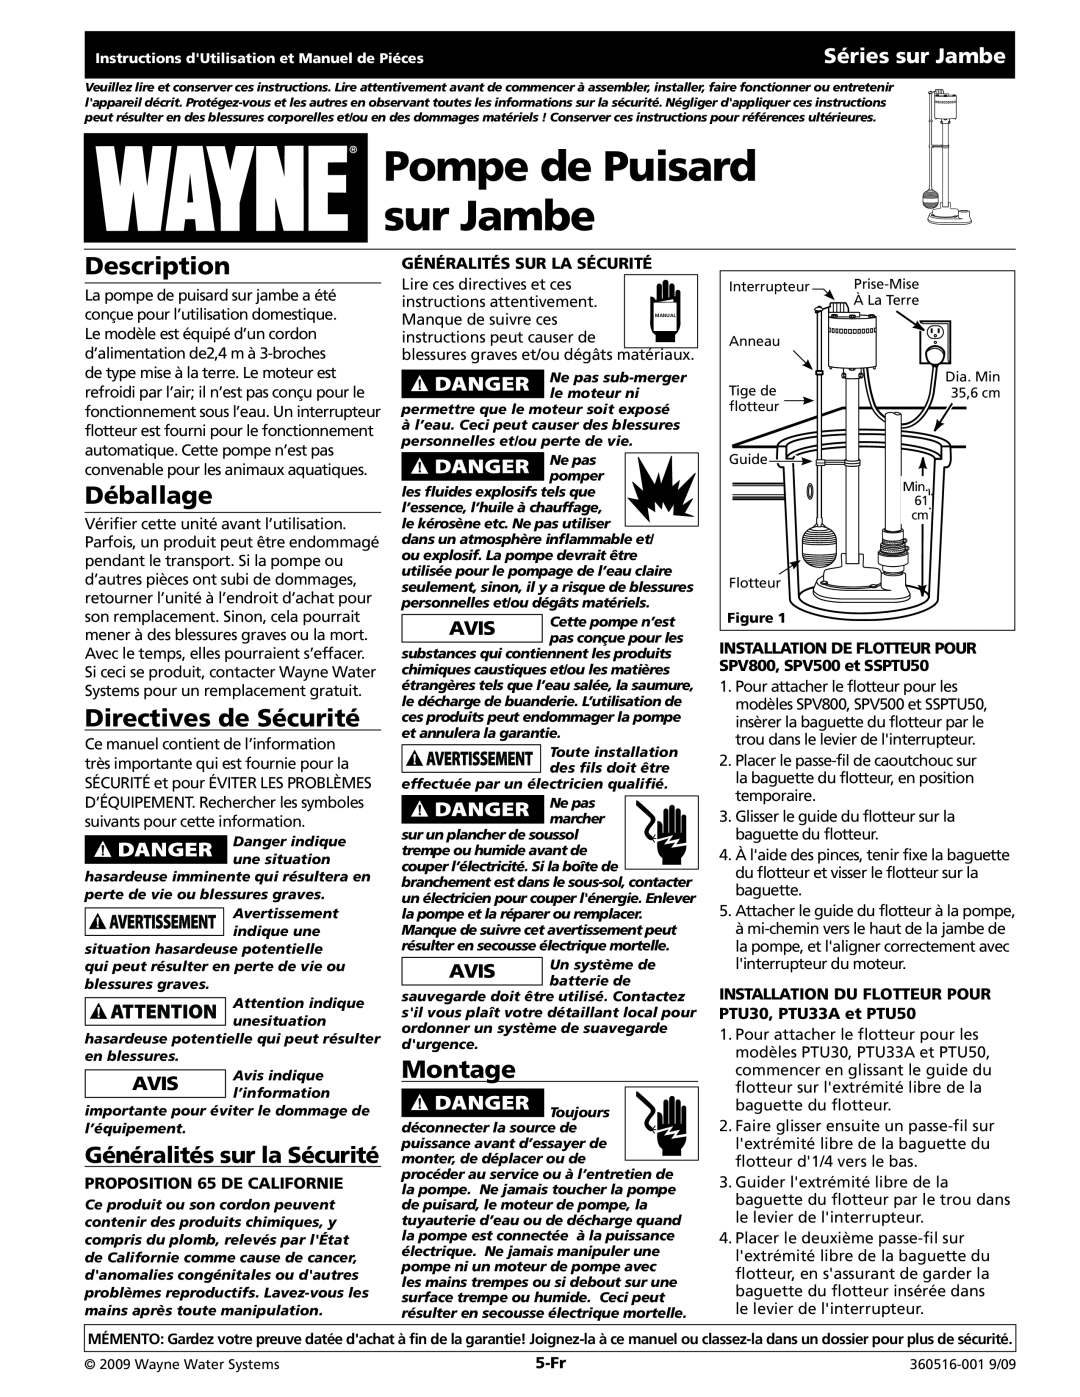 Wayne Pedestal Series Déballage, Directives de Sécurité, Montage, Généralités sur la Sécurité, Séries sur Jambe, 5-Fr 